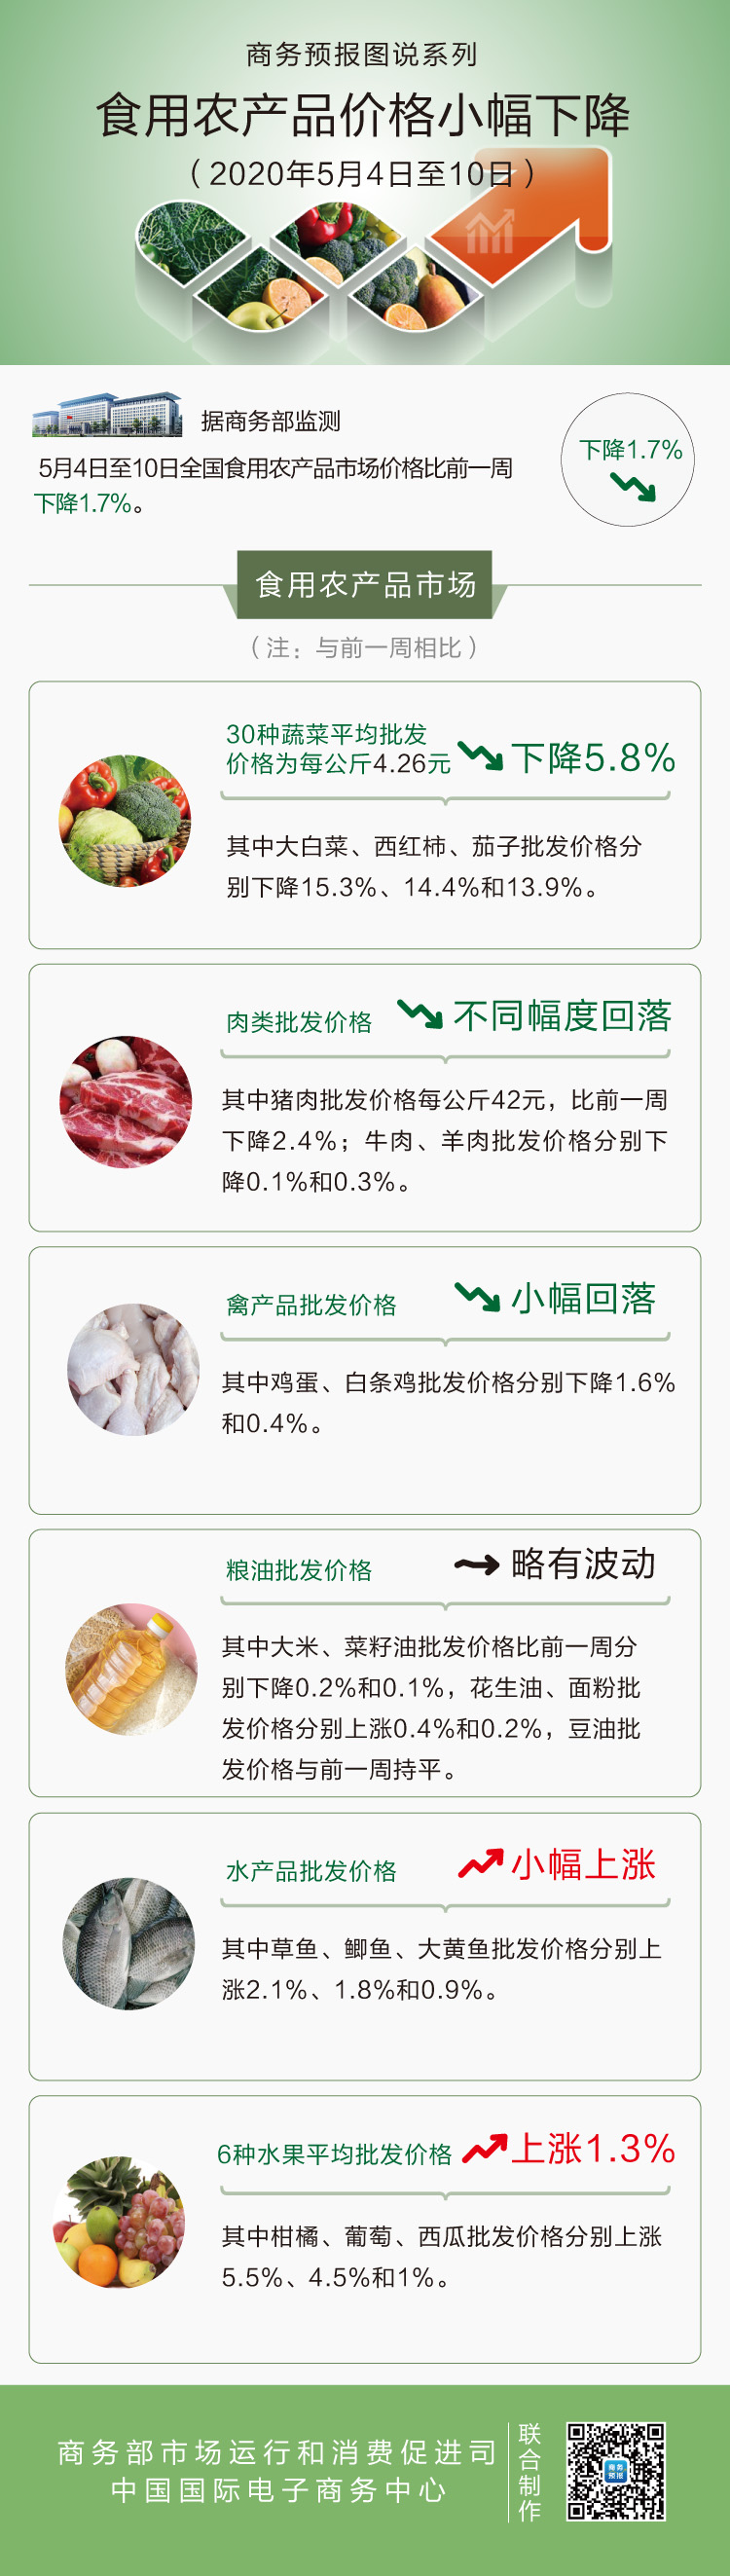 5月第2周食用农产品价格小幅下降 猪肉下降2.4%